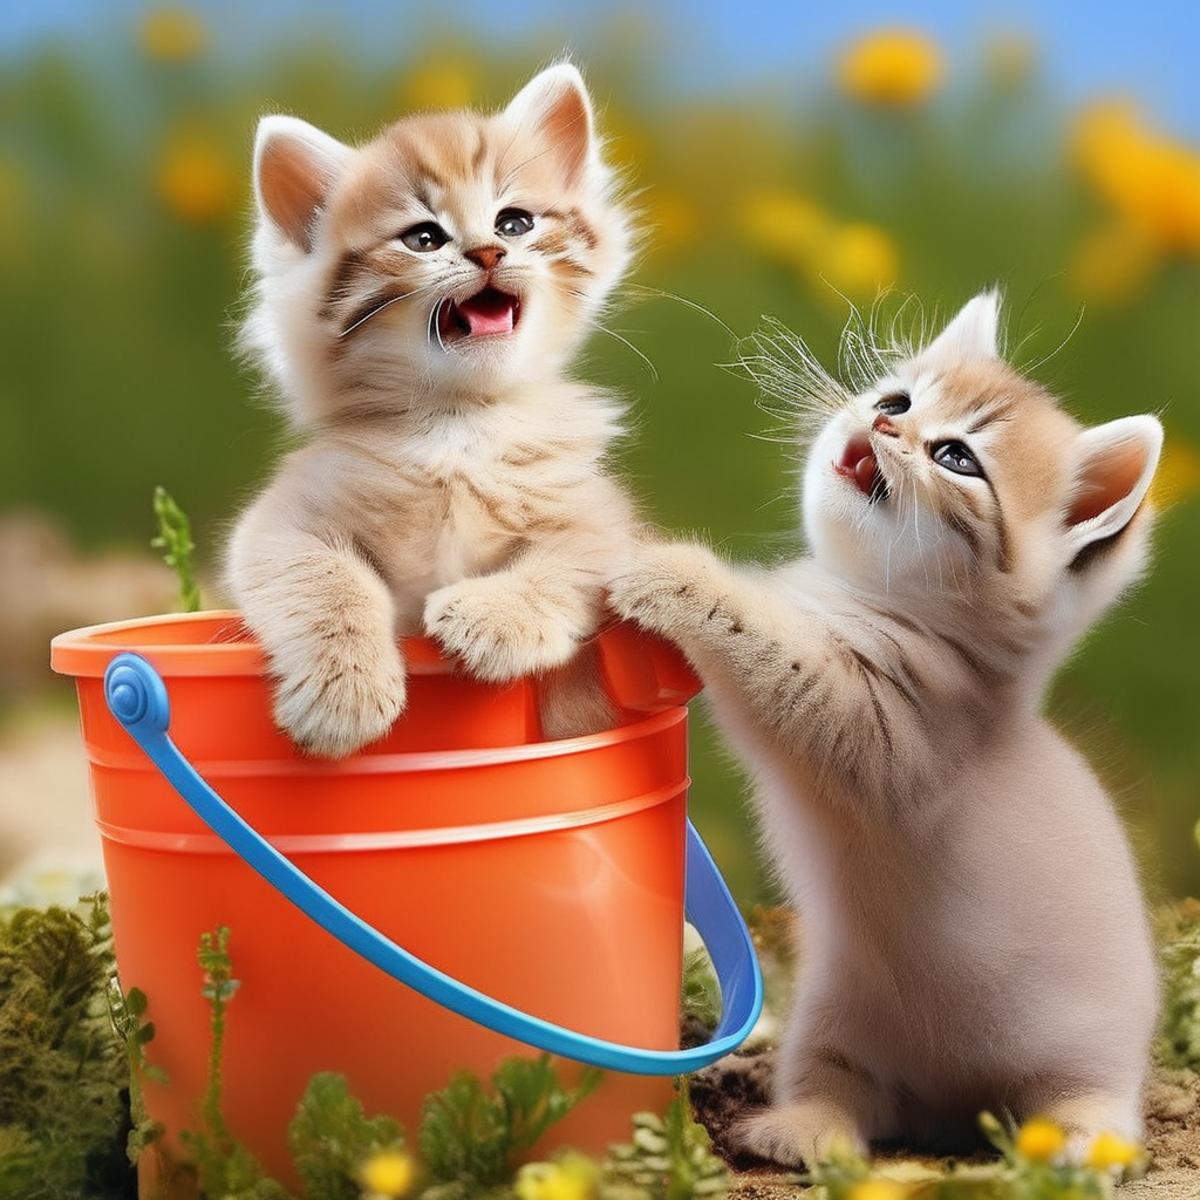 Fluffy Kittens image by massOxygen